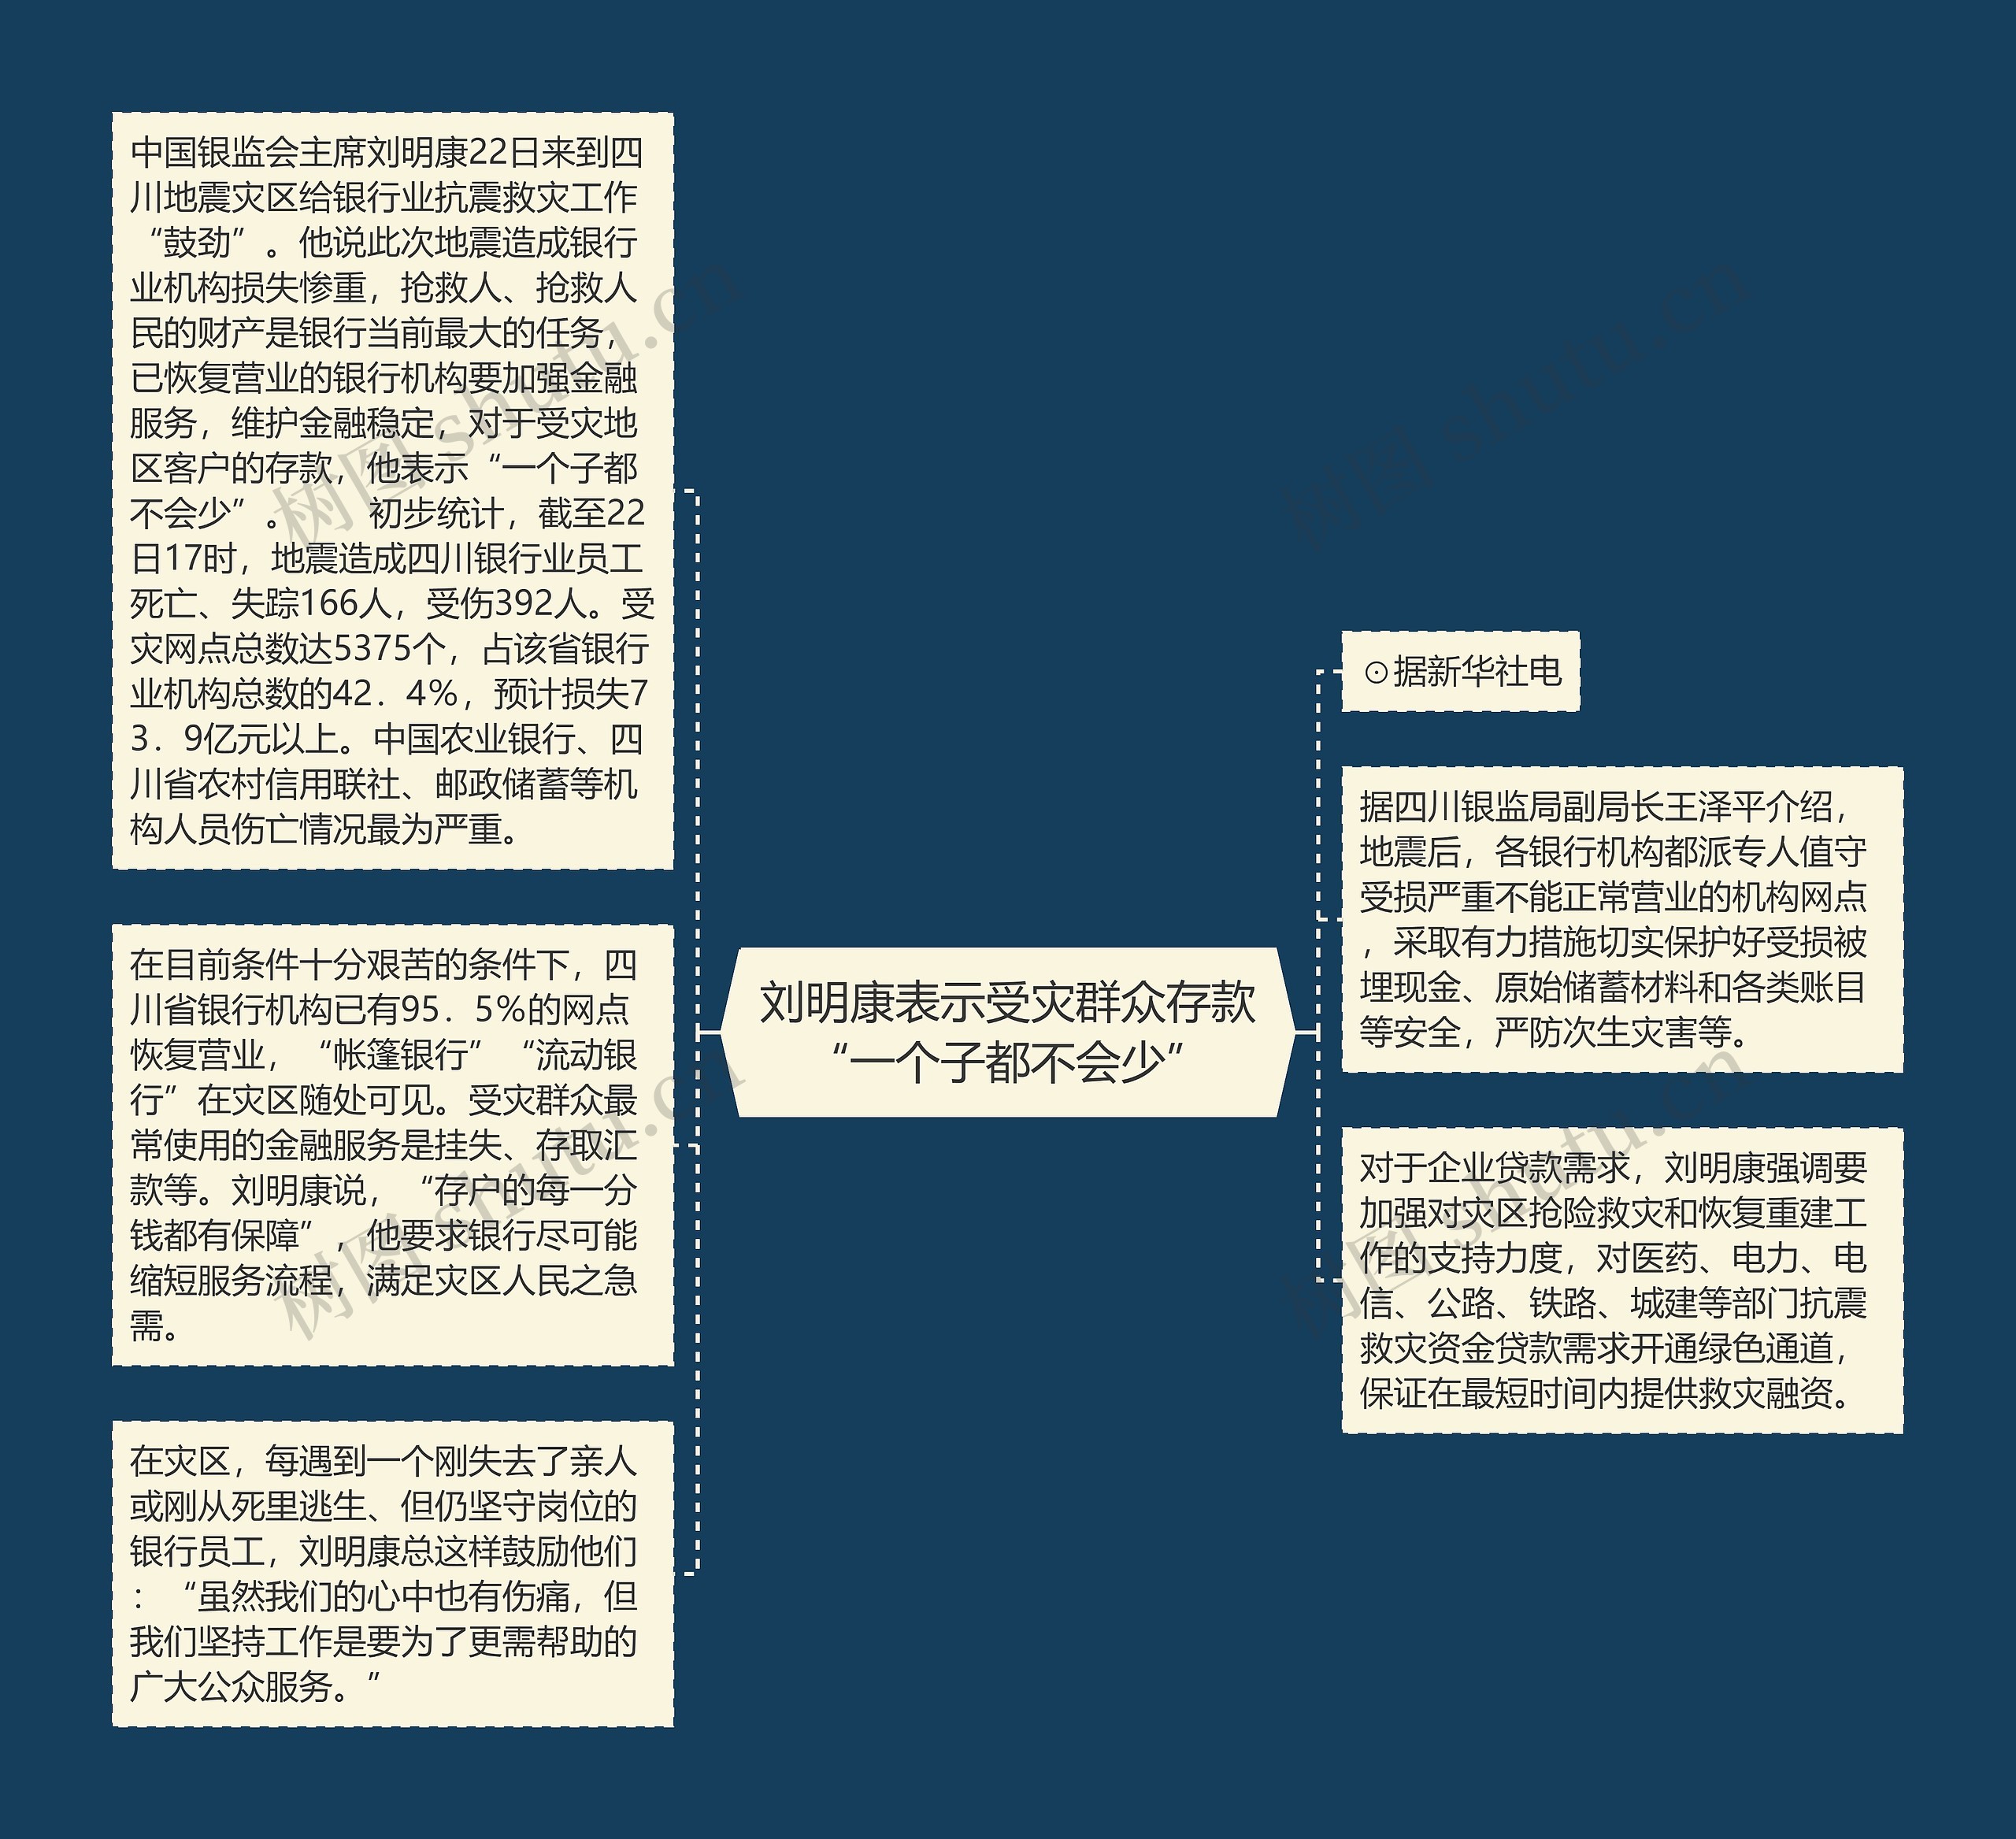 刘明康表示受灾群众存款“一个子都不会少”思维导图